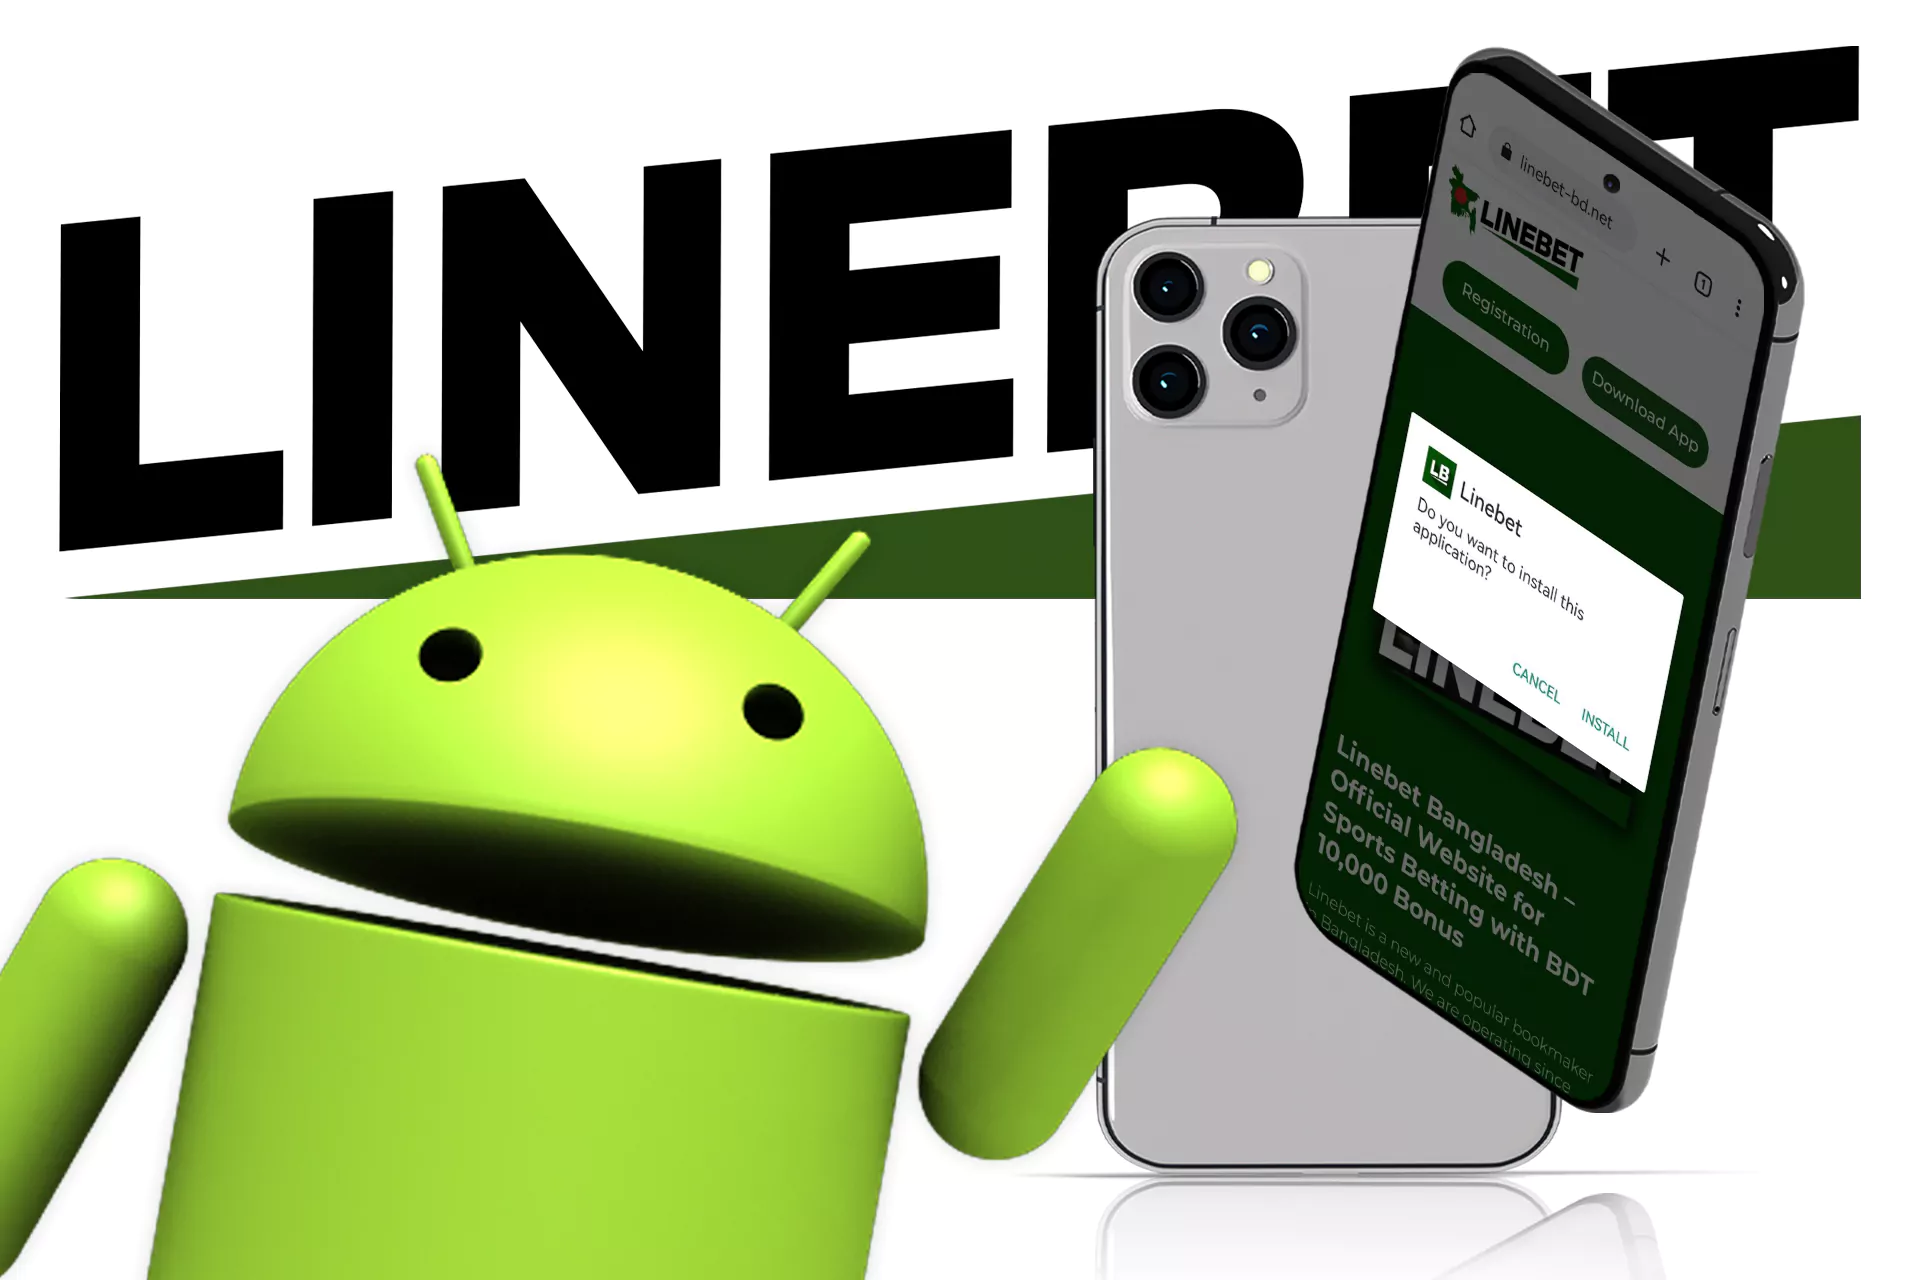 আপনার Android ডিভাইসে Linebet অ্যাপটি ইনস্টল করুন।